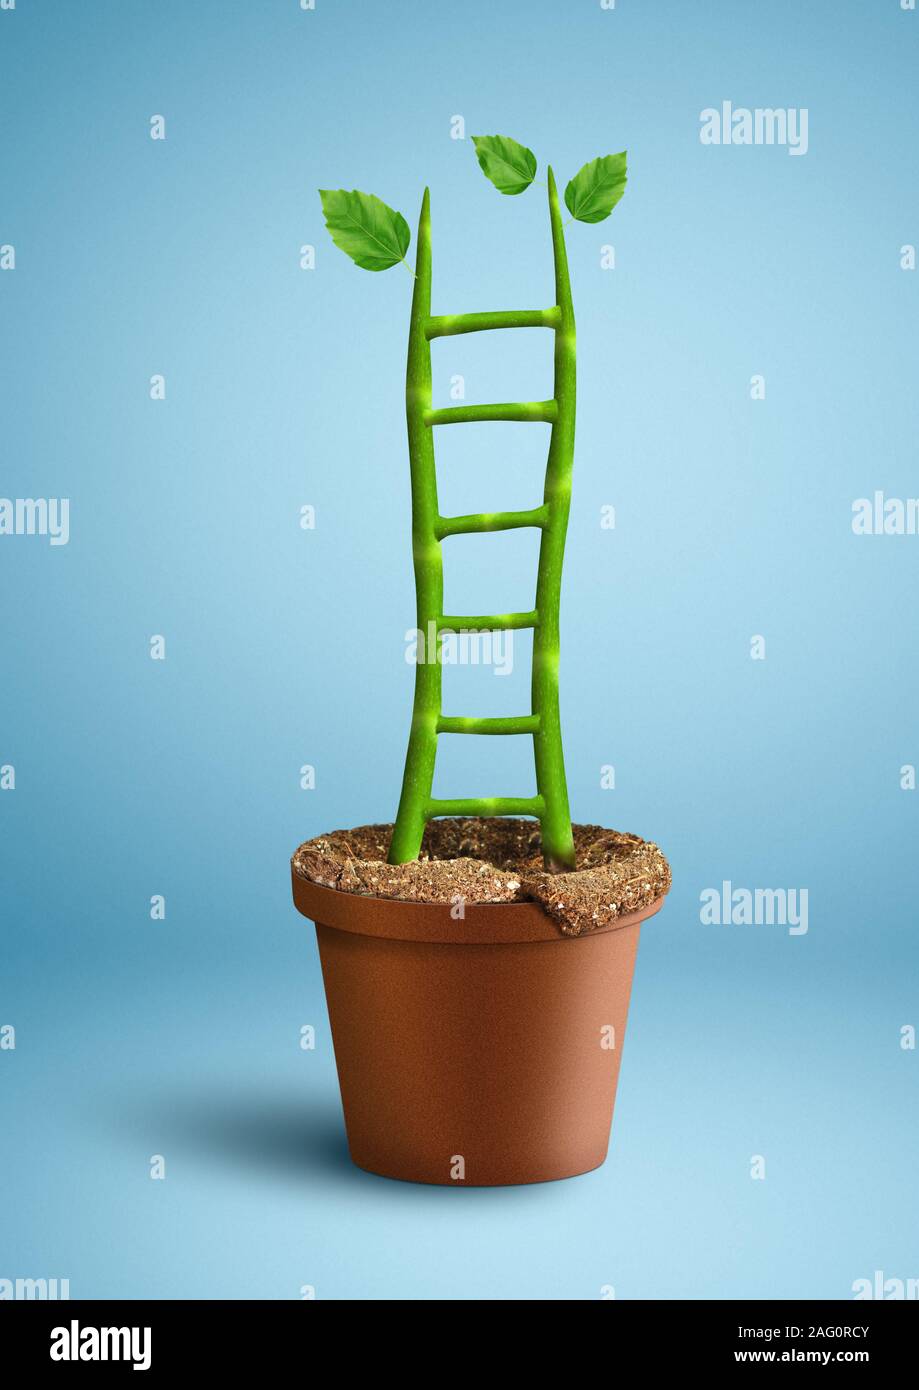 El crecimiento exitoso concepto creativo, como escalera de planta en maceta Foto de stock